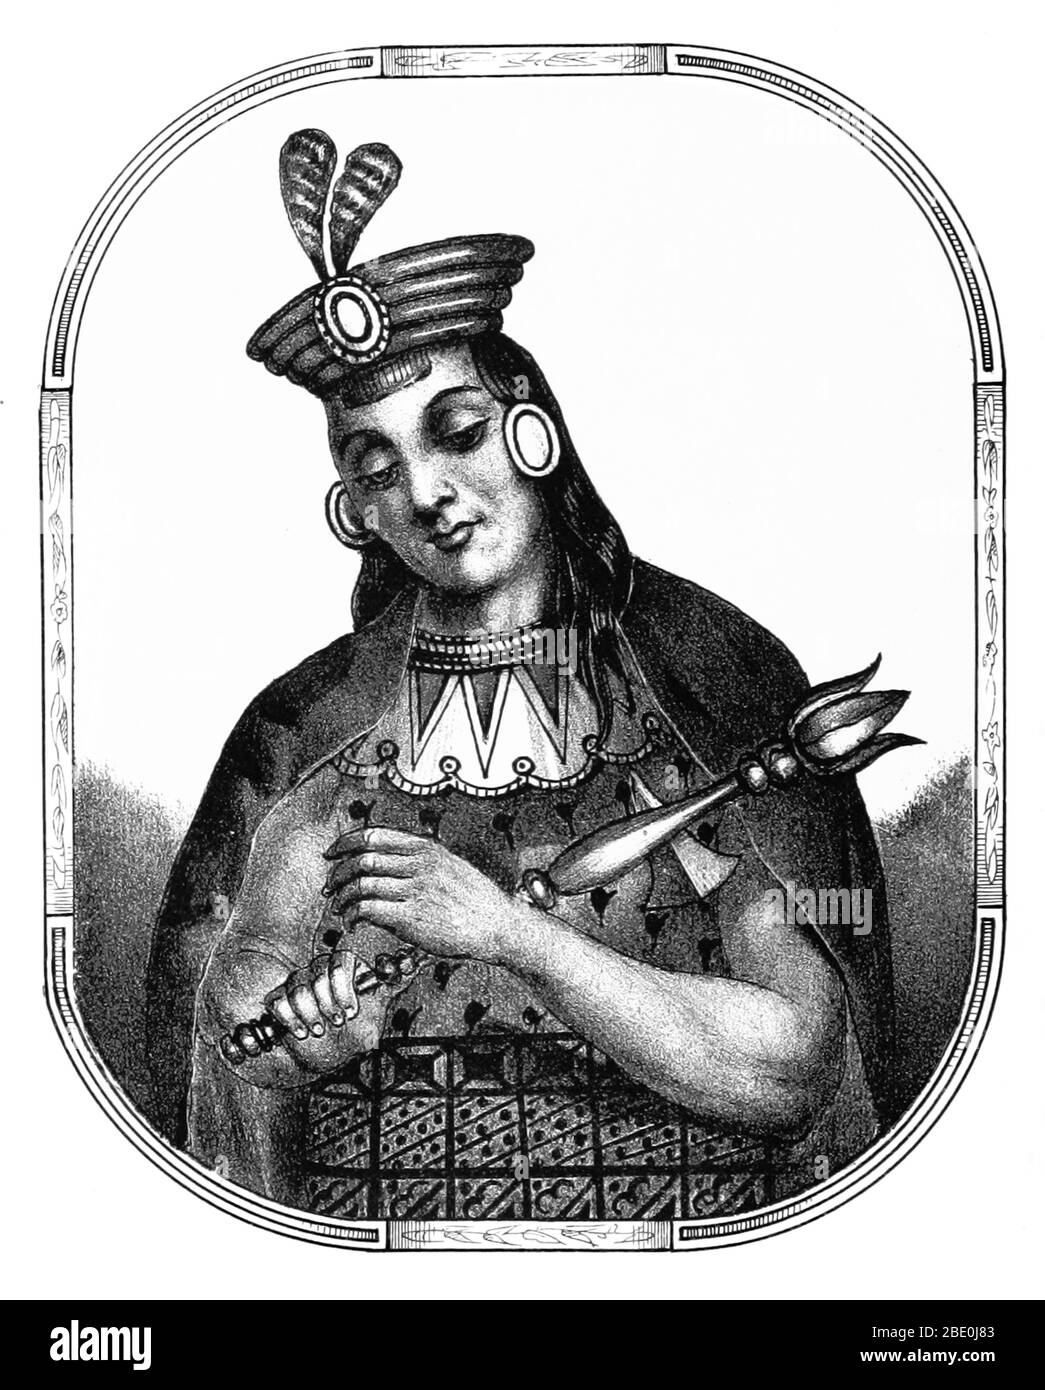 Yawar Waqaq war der siebte Sapa-Inka des Königreichs Cuzco (ab etwa 1380) und der zweite der Hanan-Dynastie. Sein Name bezieht sich auf eine Geschichte, dass er als Kind von der Ayarmaca Sinchi Tocay Capac entführt wurde, die Tränen des Blutes über seine Zwangslage weinte. Schließlich entkam er mit Hilfe einer der Mätressen seines Kopfgeldjägers, Chimpu Orma. Im Alter von 19 Jahren eroberte Yawar Pillauya, Choyca, Yuco, Chilincay, Taocamarca und Cavinas. Bild von Seite 72 von 'Recuerdos de la Monarquia Peruana, ó boquejo de la historia de los Incas, etc' von Justo Sahuaraura, 1850. Stockfoto